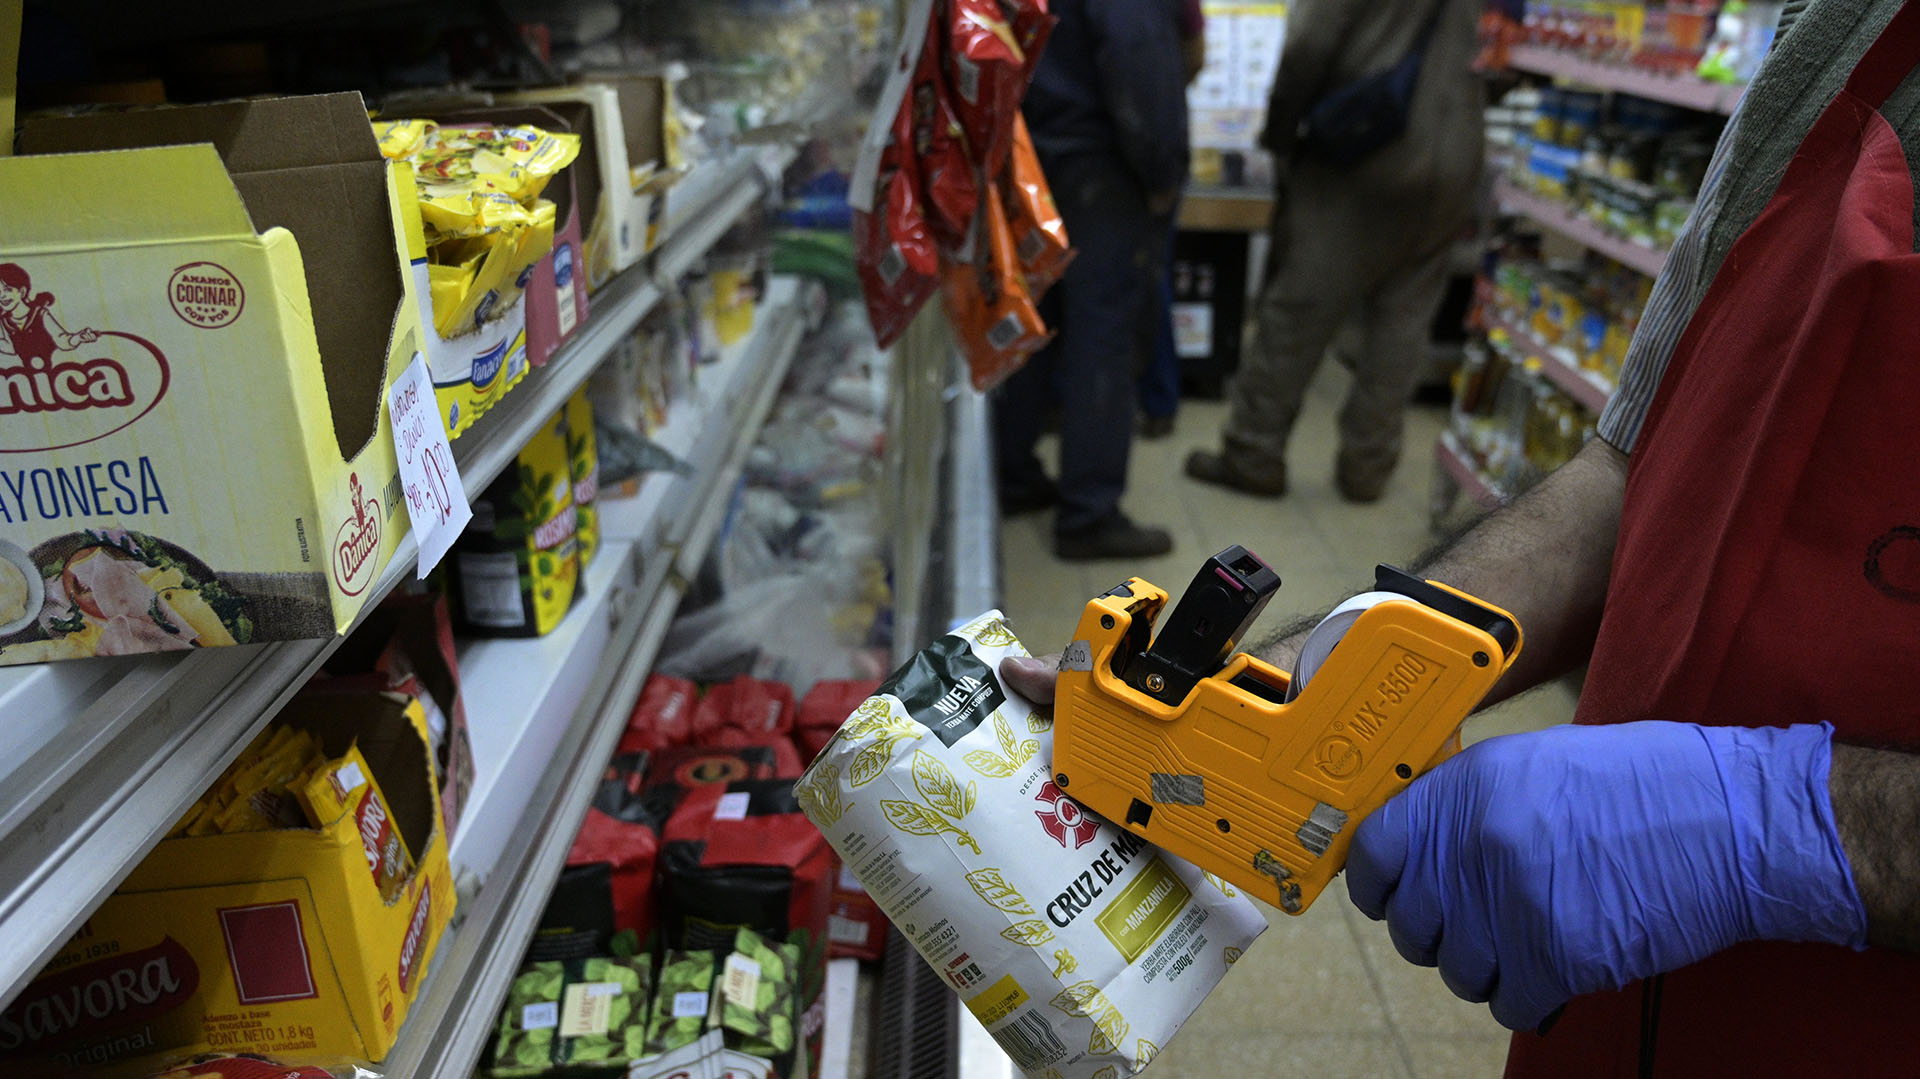 Los sectores con cierto poder adquisitivo apuran sus compras buscando anticiparse a la pérdida de valor del dinero
Photo by Juan MABROMATA / AFP